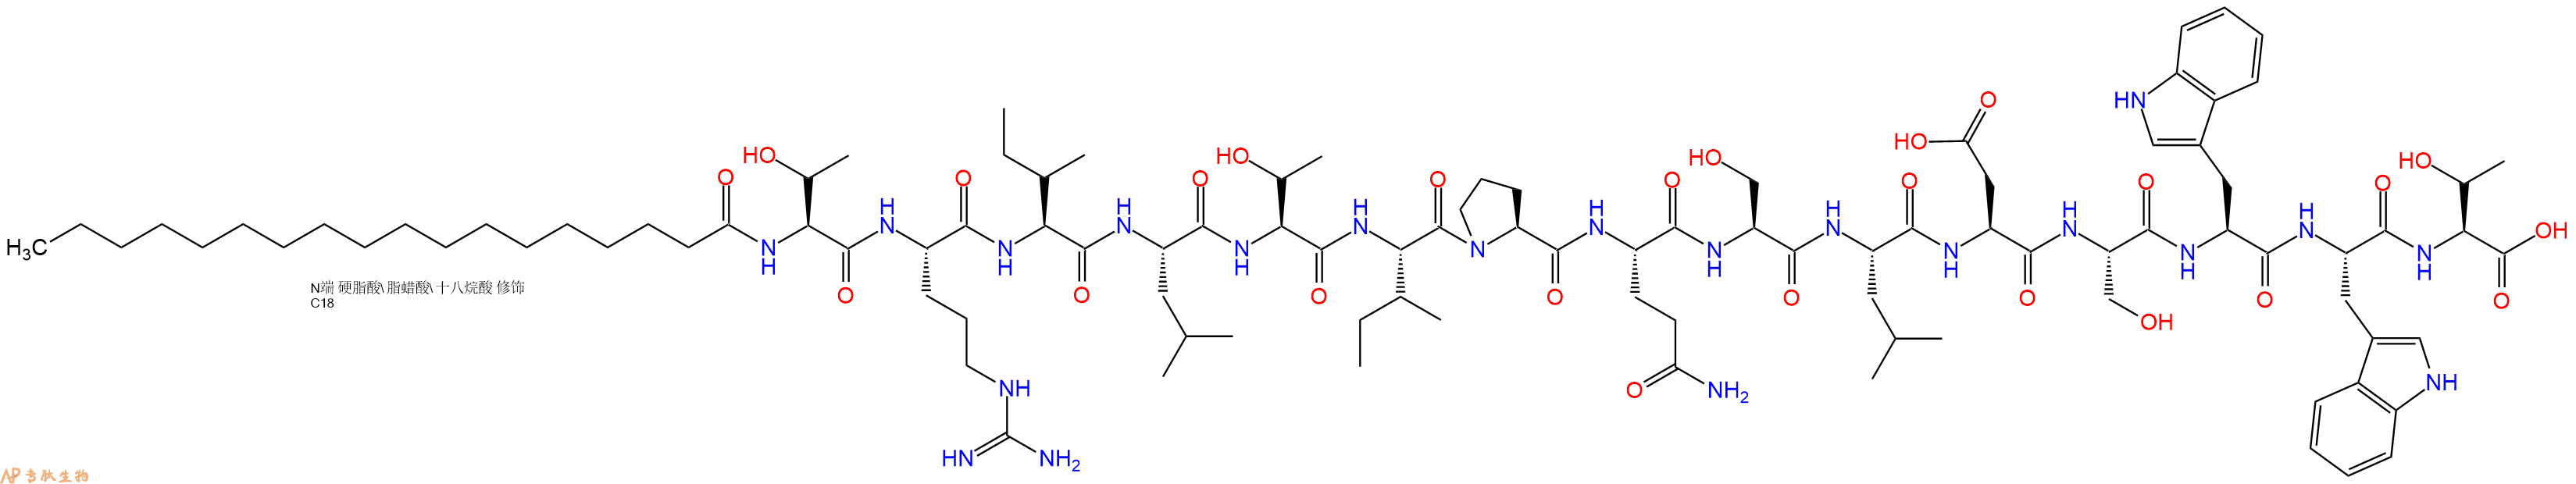 专肽生物产品Stearicacid-Thr-Arg-Ile-Leu-Thr-Ile-Pro-Gln-Ser-Le